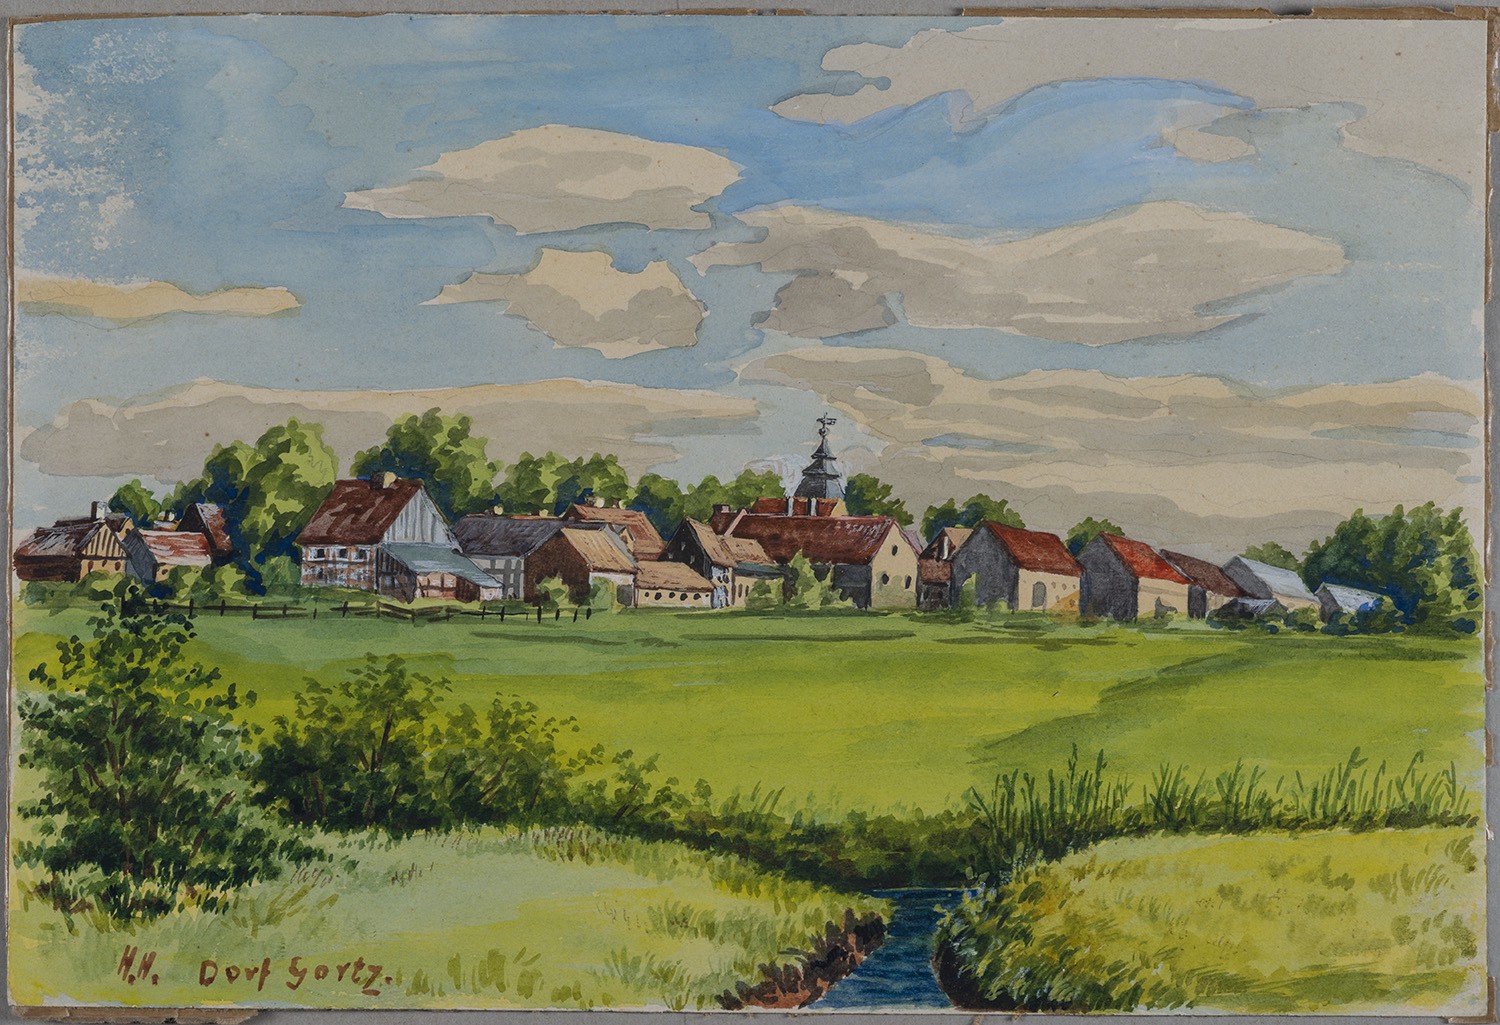 Gortz (Kr. Westhavelland): Dorf (Landesgeschichtliche Vereinigung für die Mark Brandenburg e.V., Archiv CC BY)